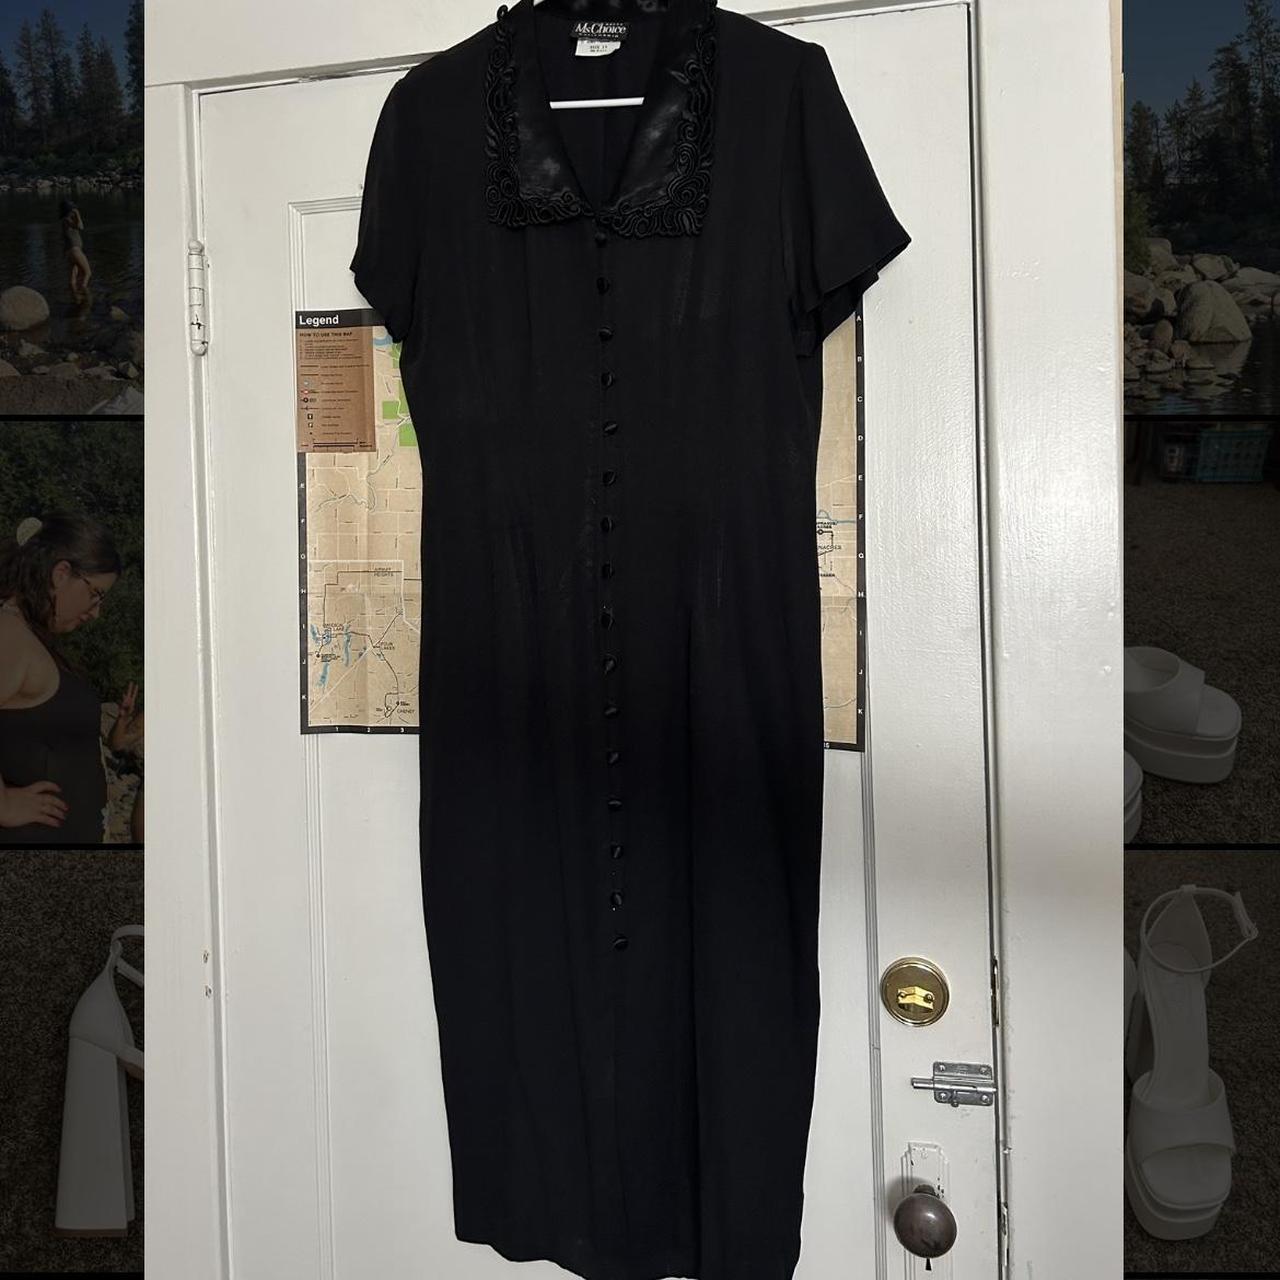 Vintage black goth dress 🥰 marked size 14 but closer... - Depop